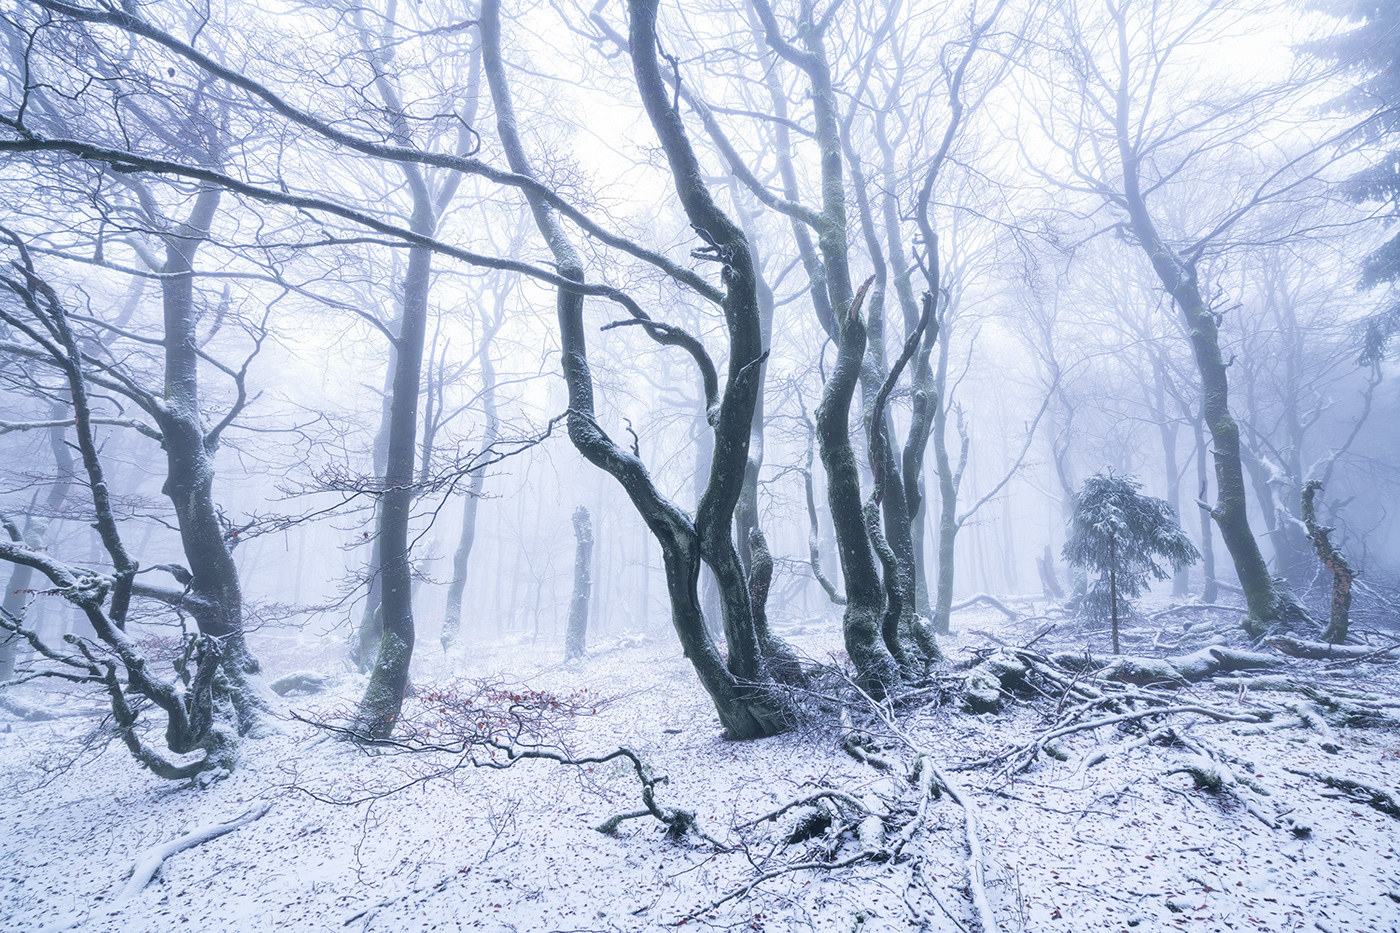 Beech coldness enchanted fangorn fog forest frozen secret trees wood